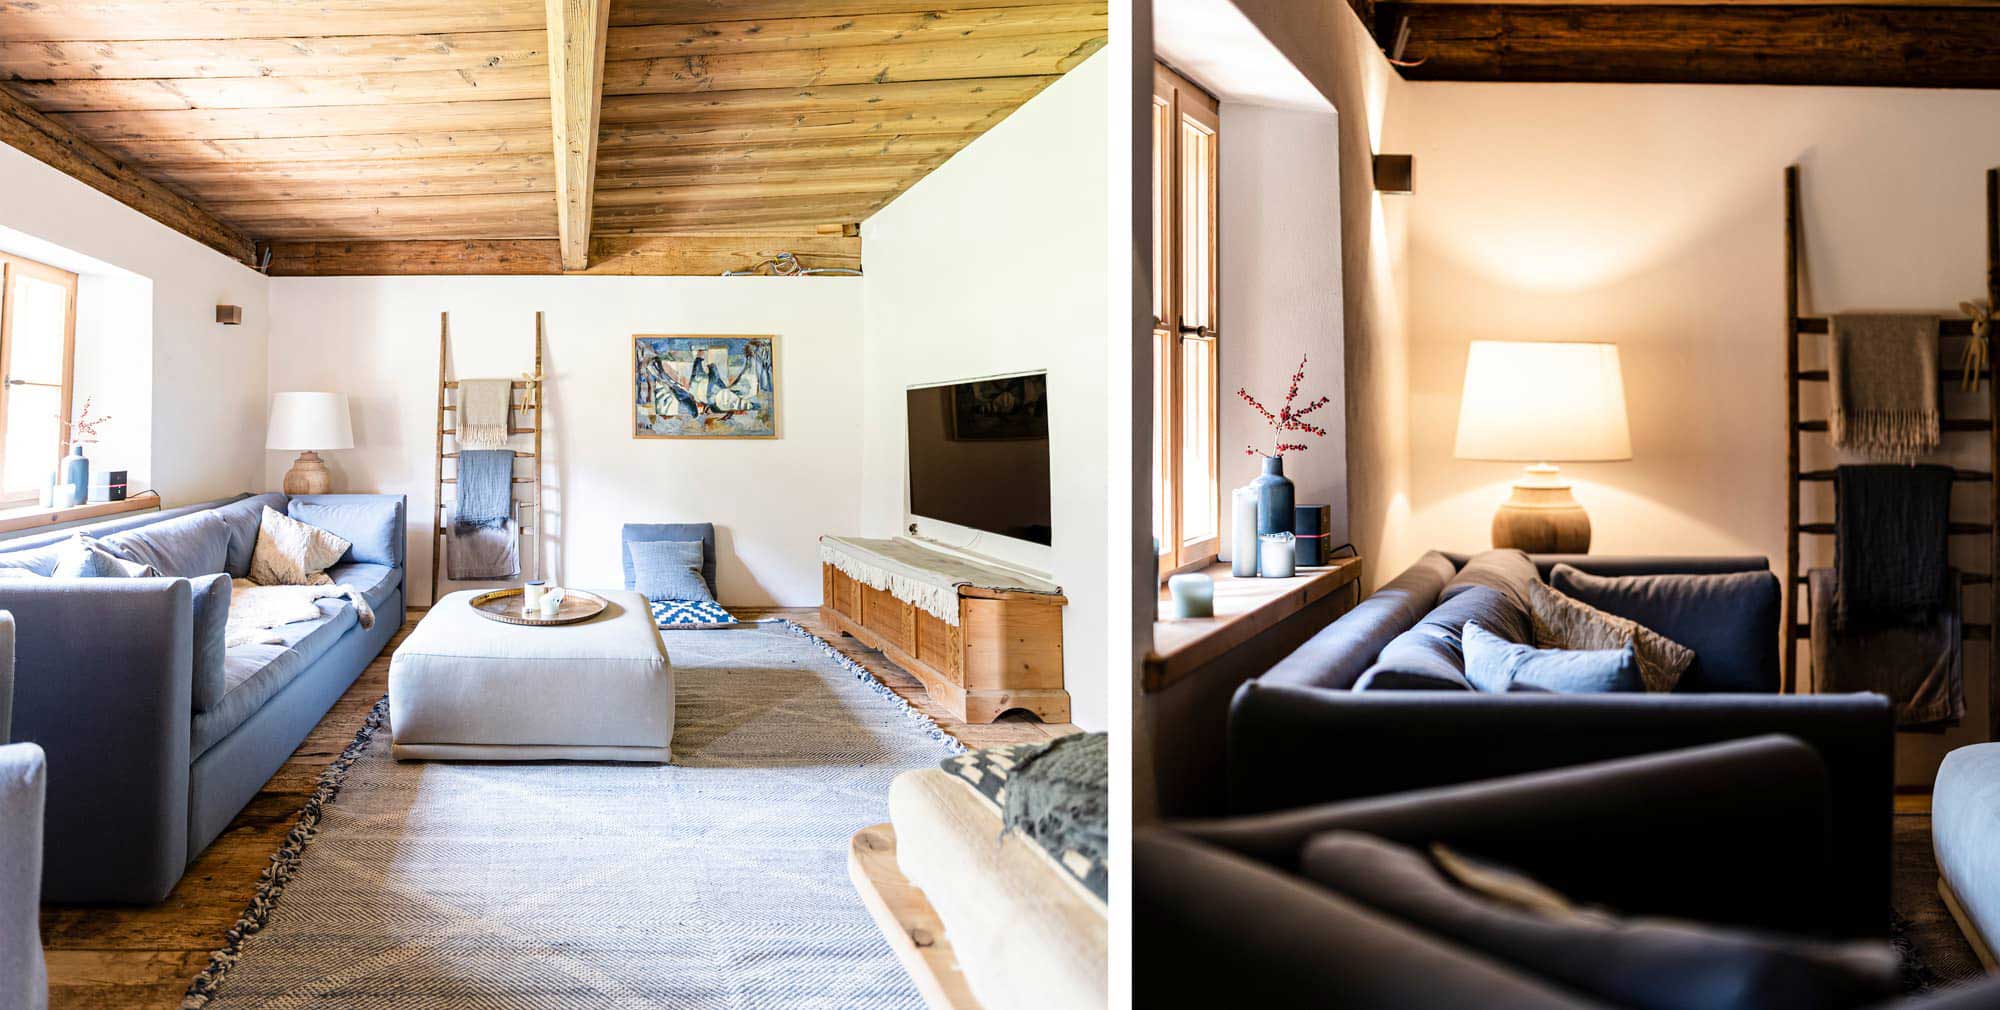 Couch in Wohnberich | Lichteffekte | Haus Renovierung in Kitzbühel